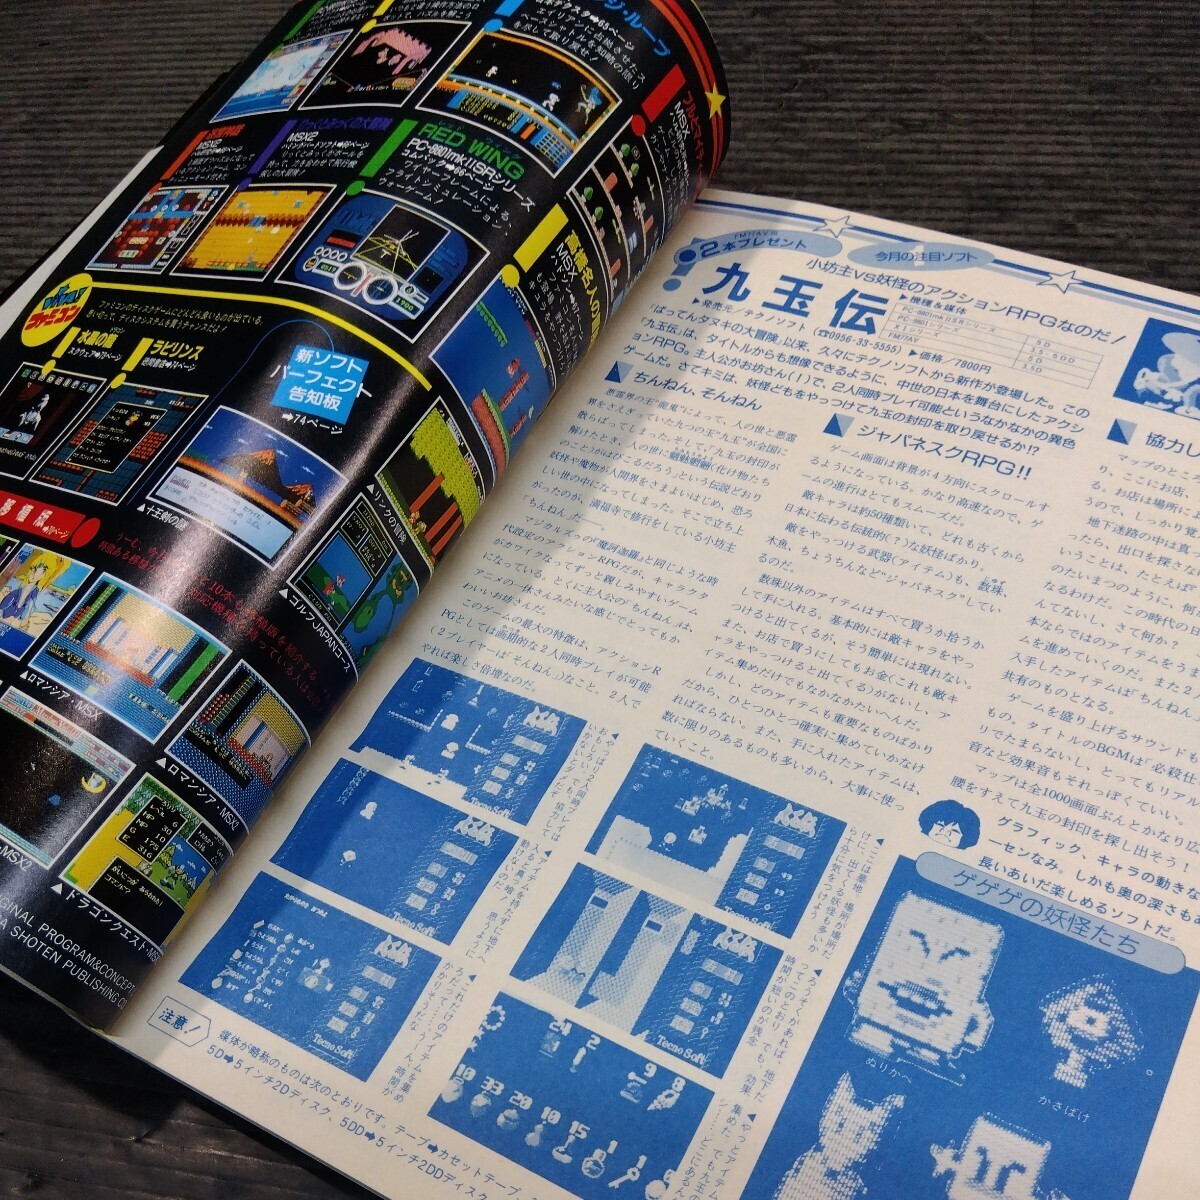 テクノポリス 1987年2月号 PCゲーム 雑誌 貴重 マガジン 情報誌 レトロ本 月刊 パソコンゲーム 美少女ゲーム 改造法 必勝法 PC-8801_画像6